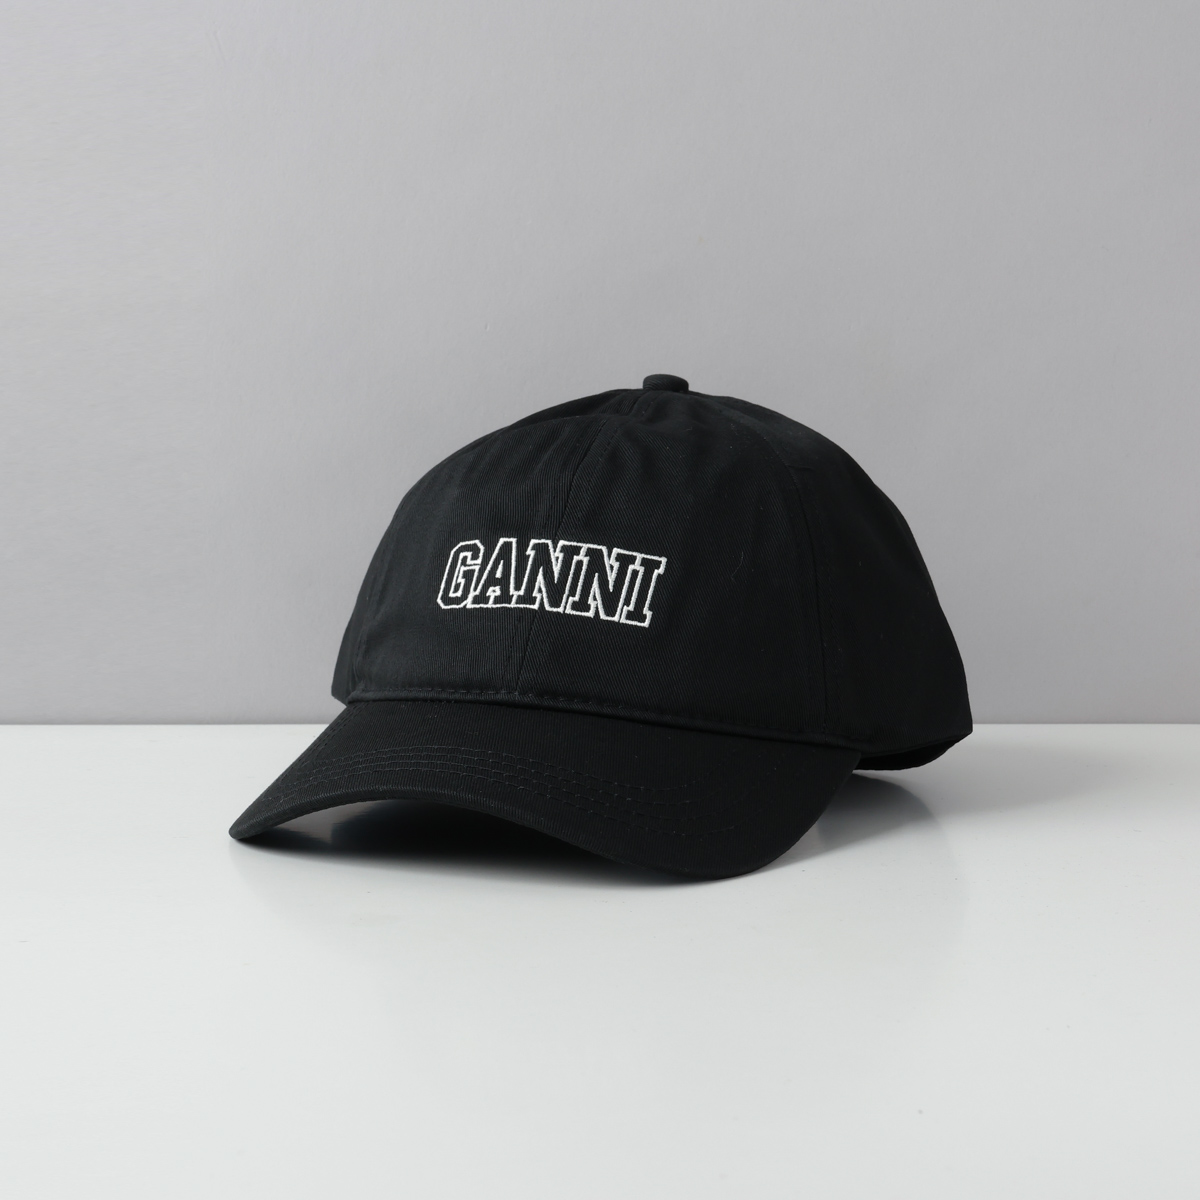 ガニー GANNI 帽子 キャップ ロゴ シンプル 人気 おしゃれ ブランド A4968 5890 メンズ レディース ユニセックス